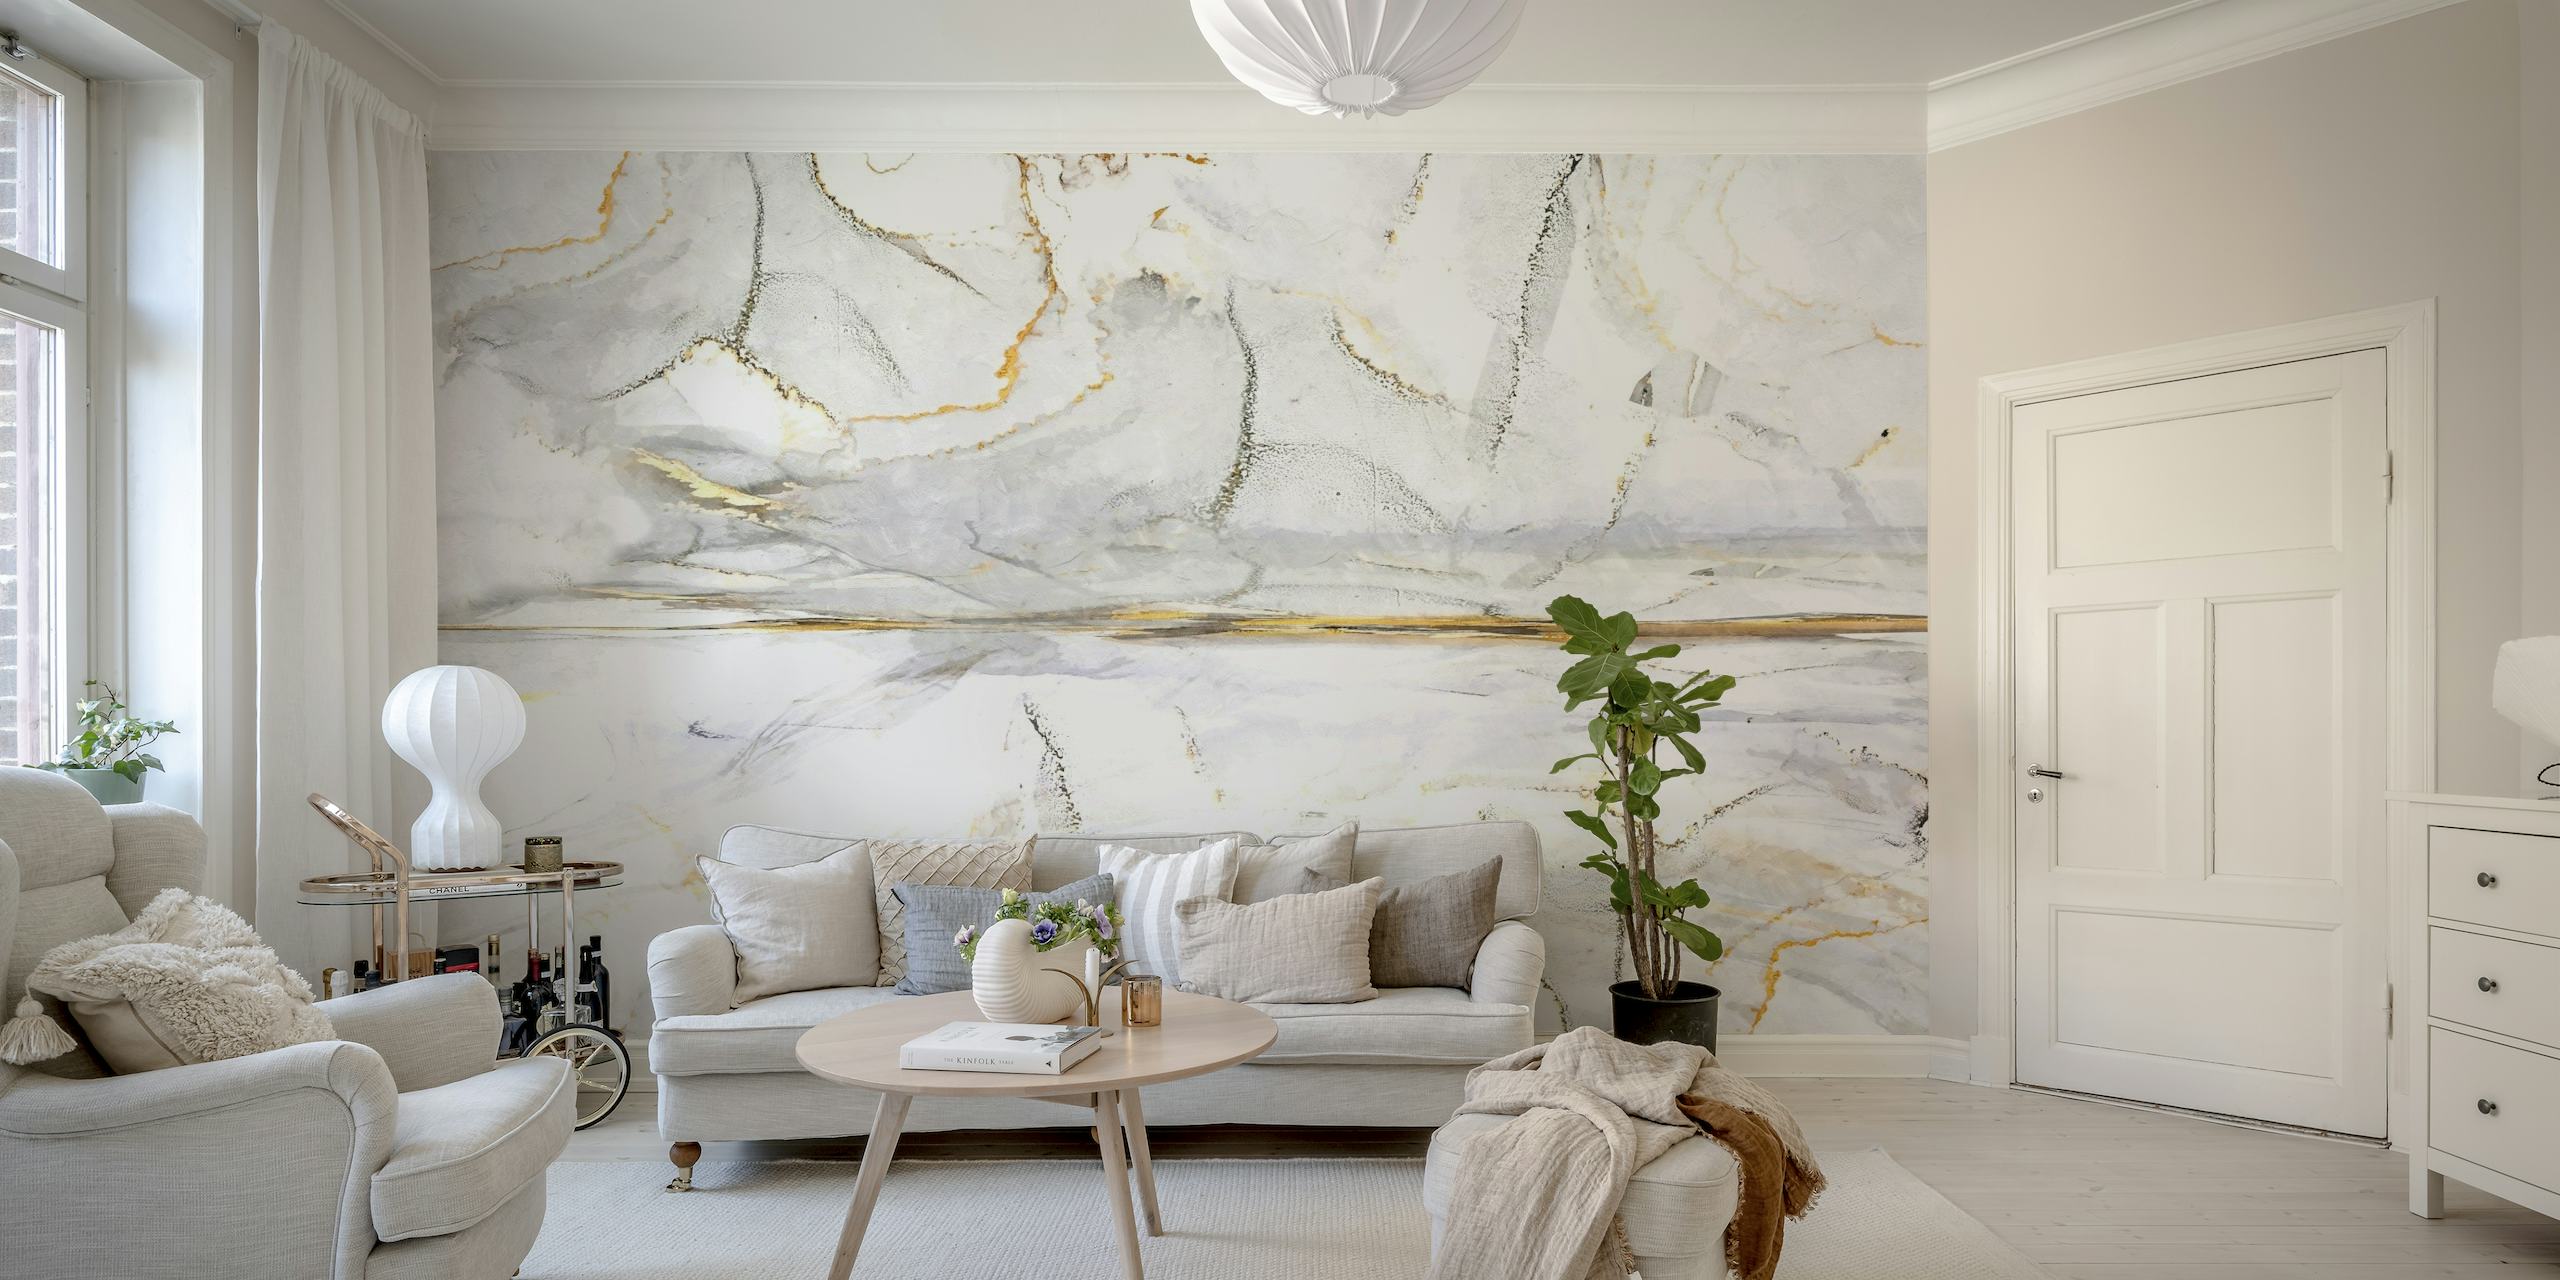 Pintatapetti 19, jossa on marmorikuvioita ja valkoisia, harmaita ja kultaisia kuvioita